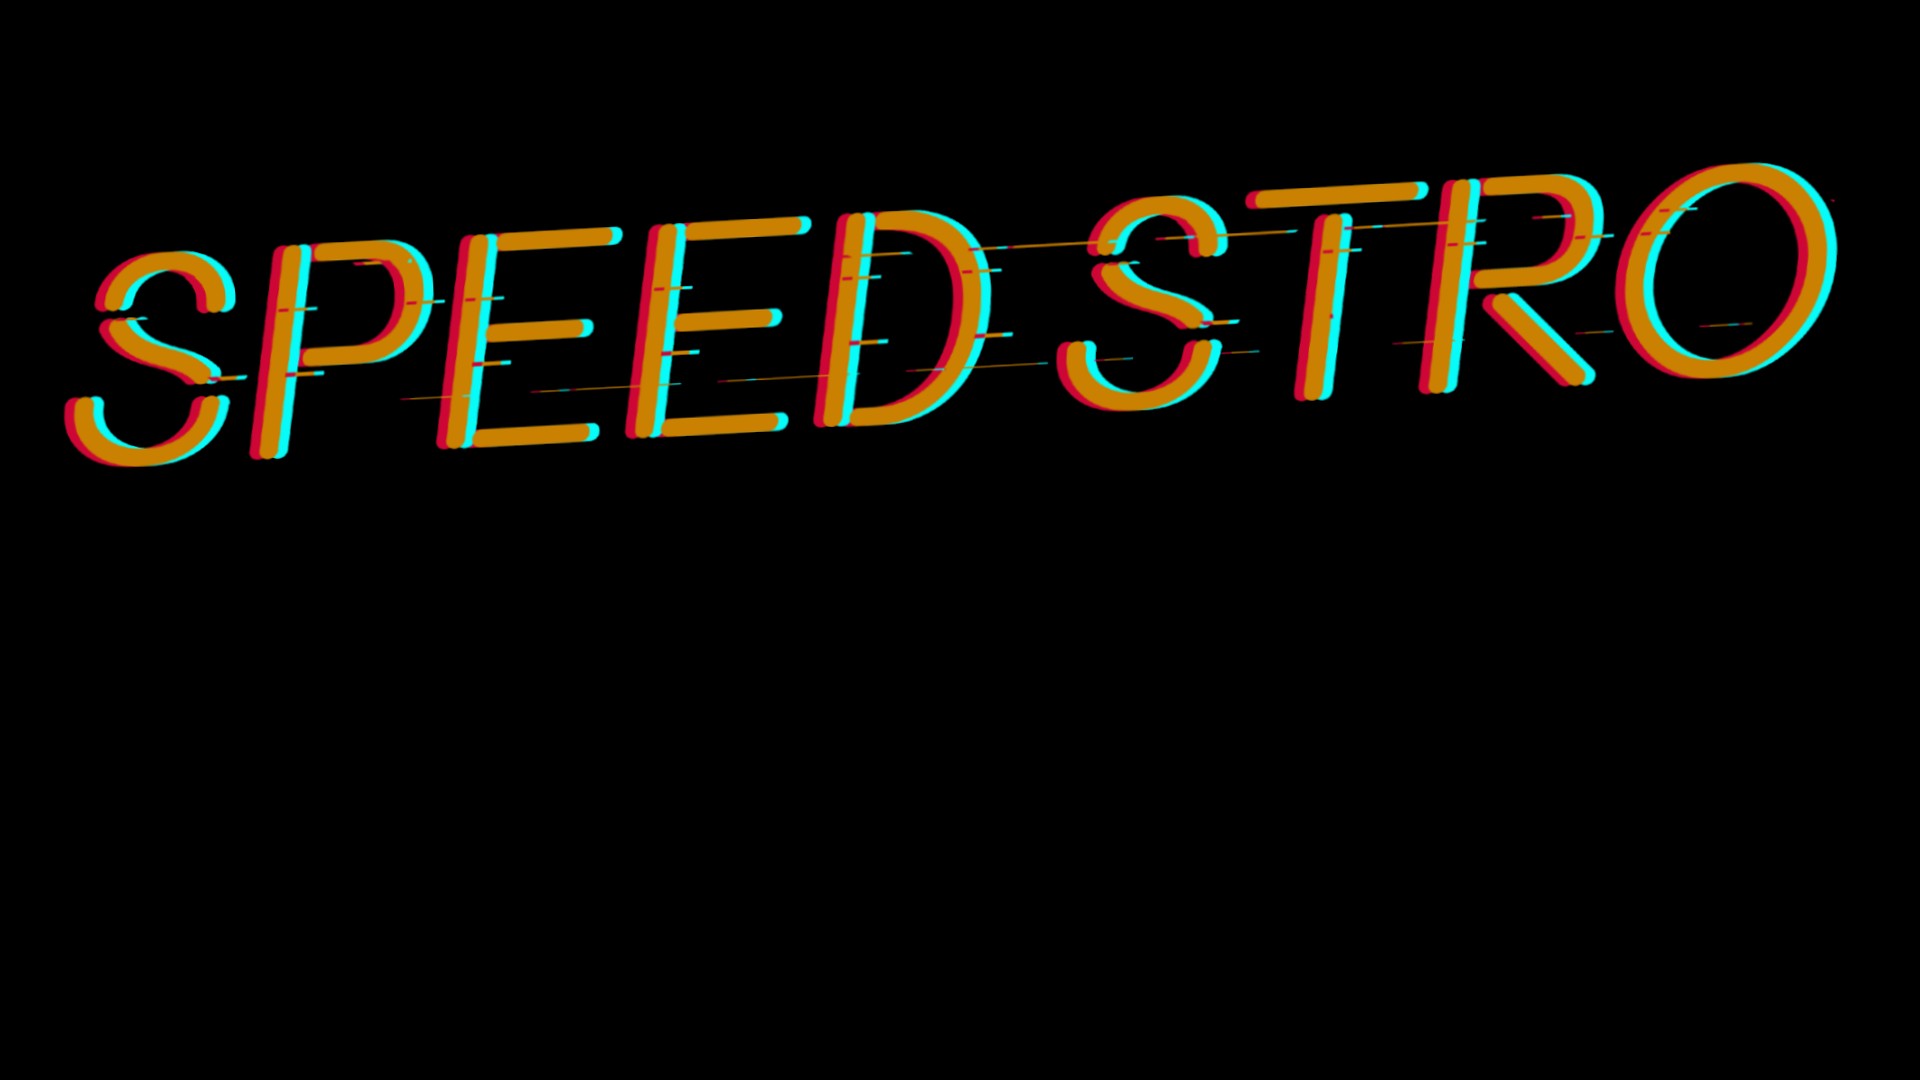 Speed Stro